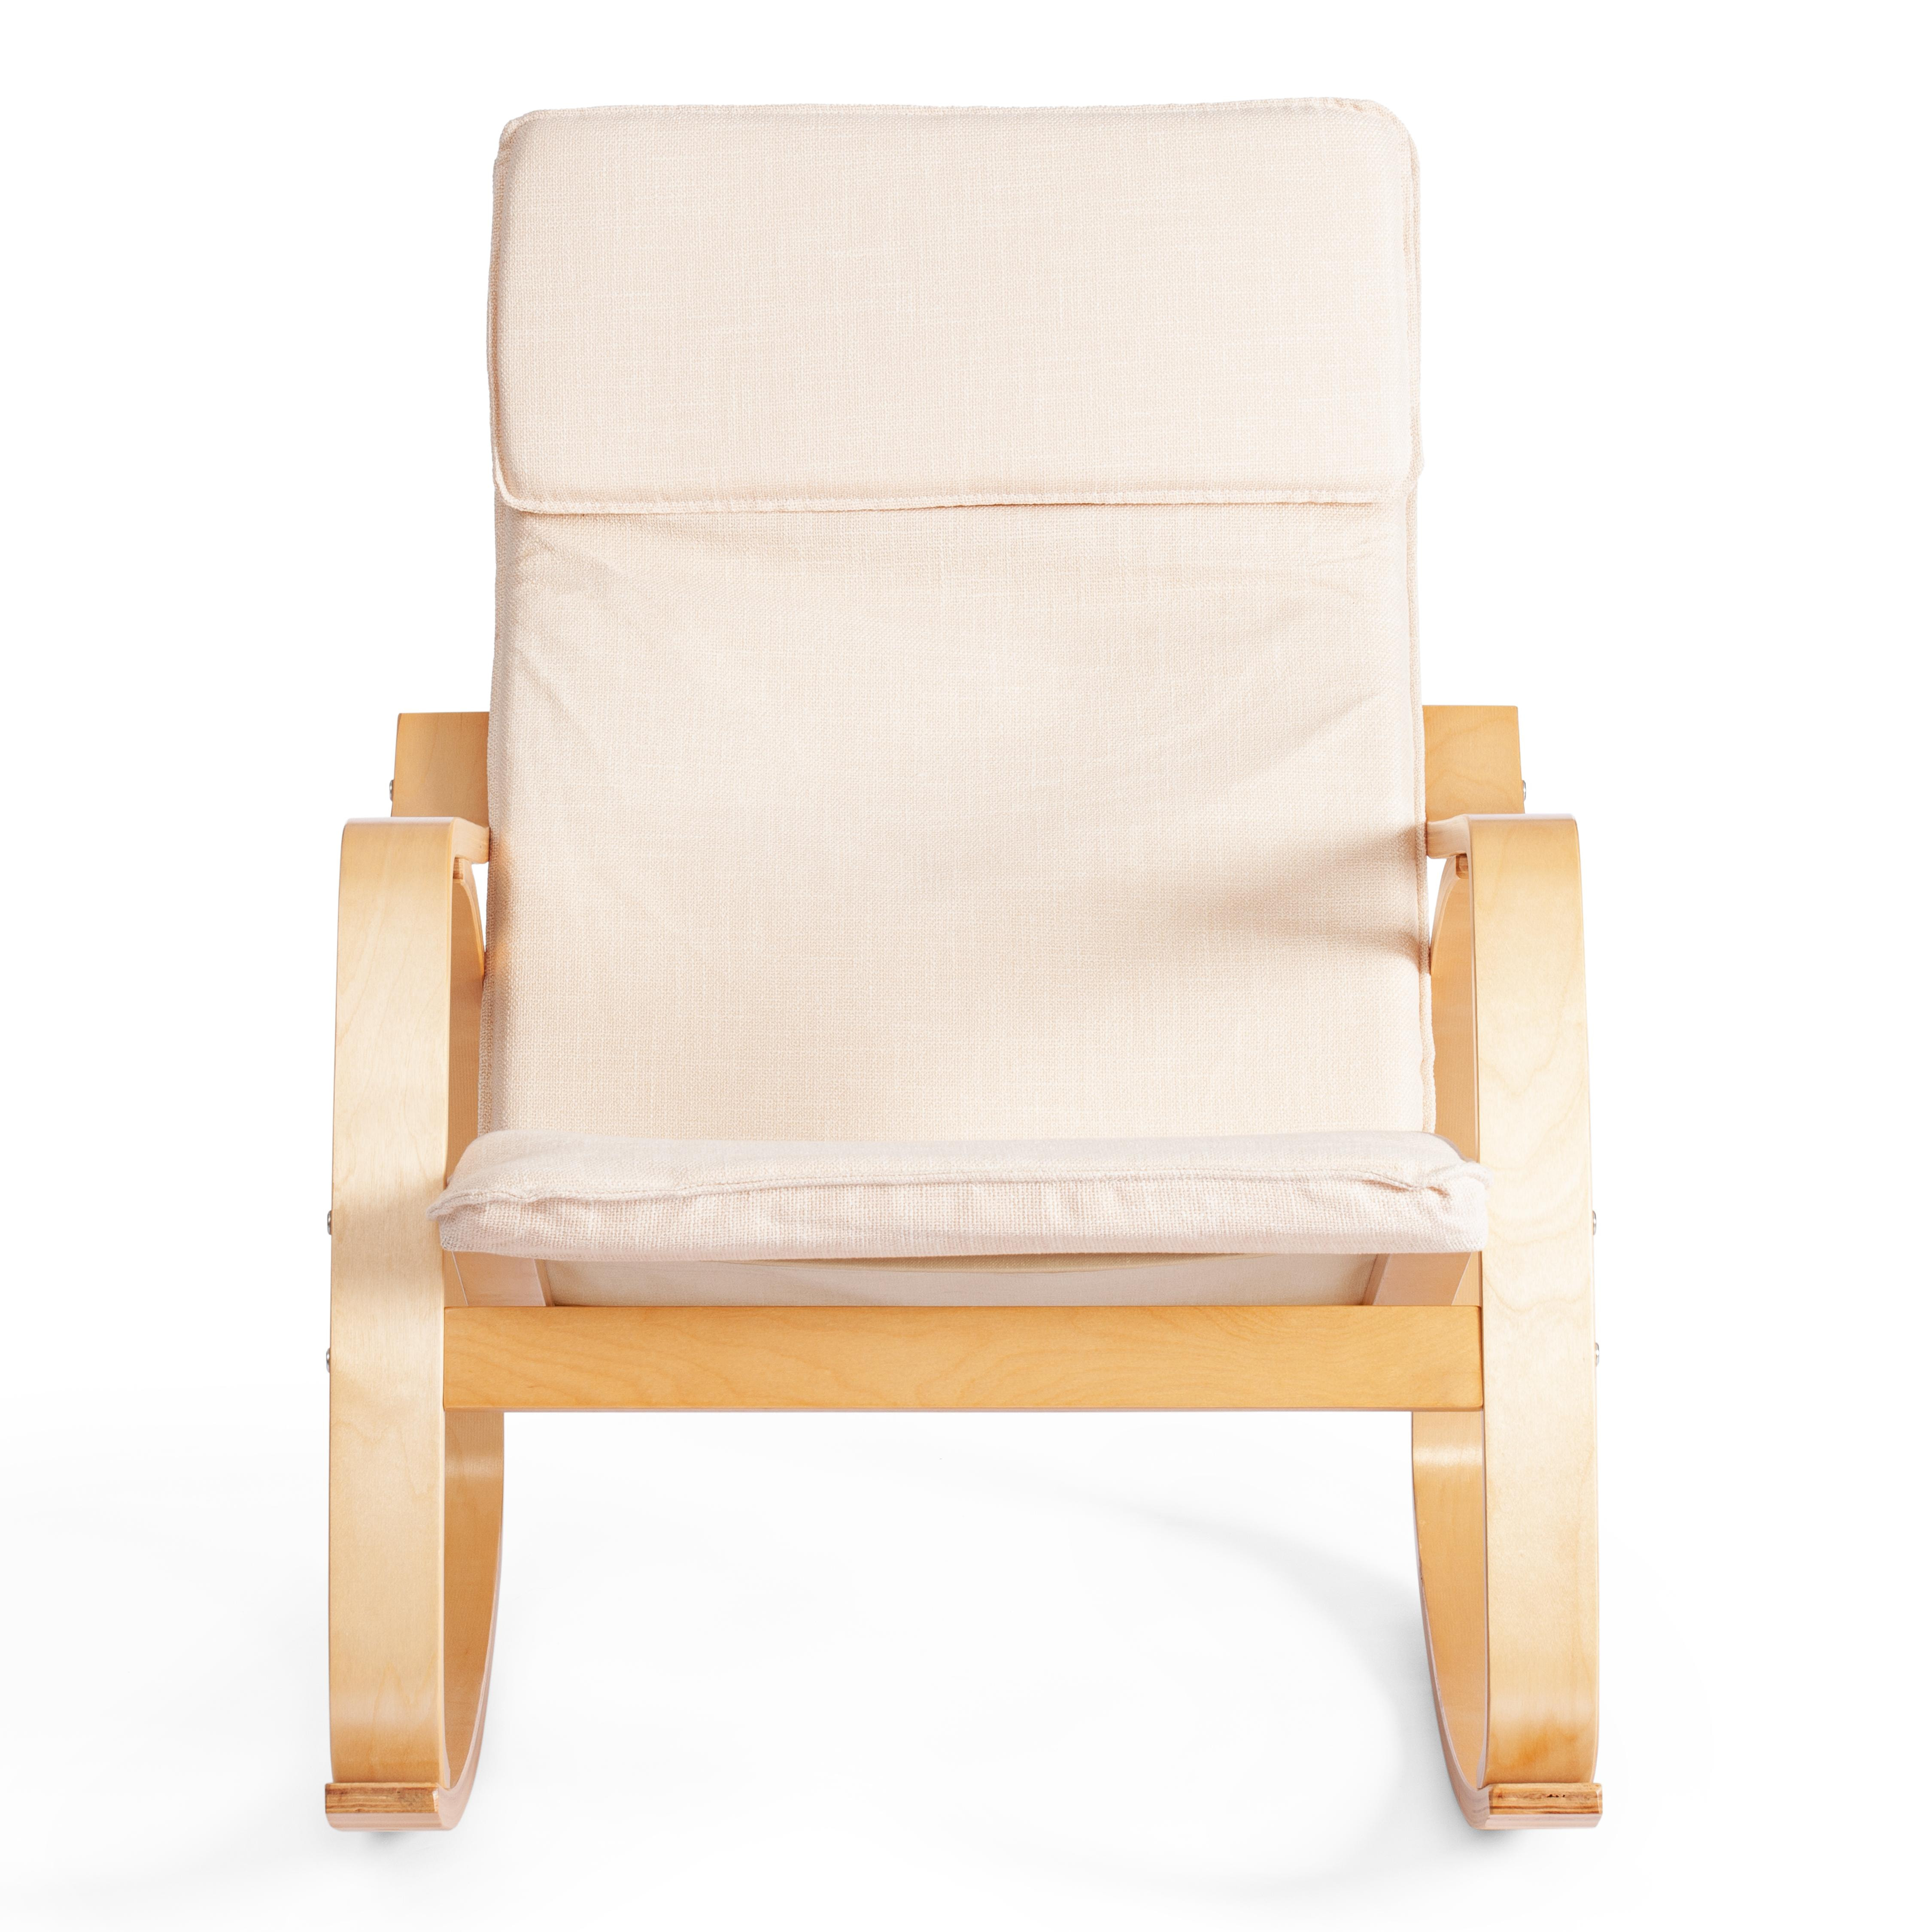 Кресло-качалка mod. AX3005 дерево береза, ткань: полиэстер/хлопок, 61х94,5х104 см, дерево: дуб #3, ткань бежевая 1501-4